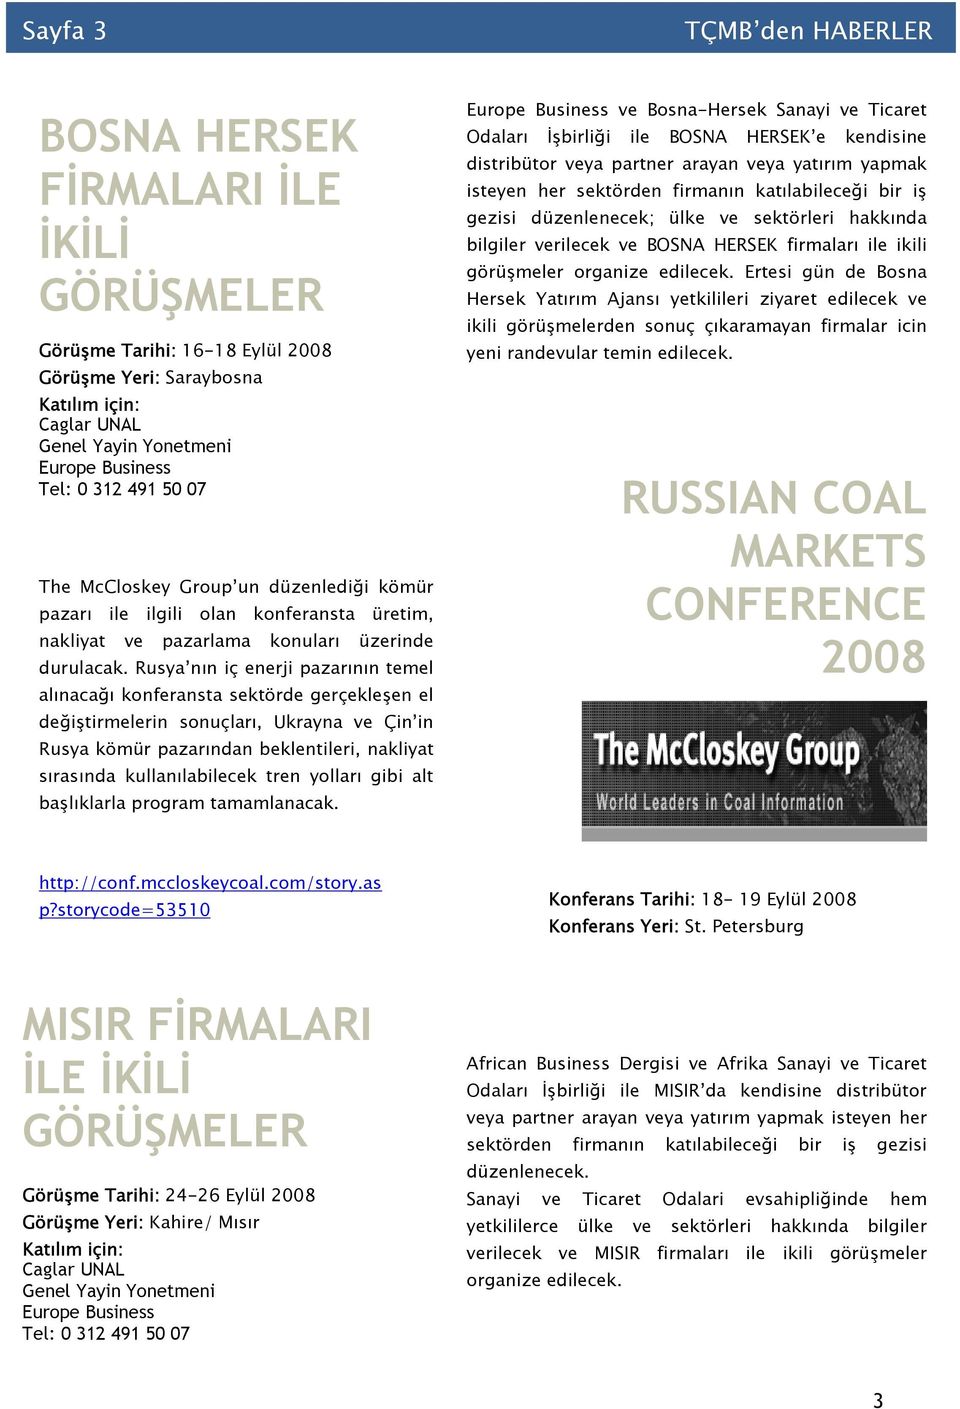 Rusya nın iç enerji pazarının temel alınacağı konferansta sektörde gerçekleşen el değiştirmelerin sonuçları, Ukrayna ve Çin in Rusya kömür pazarından beklentileri, nakliyat sırasında kullanılabilecek